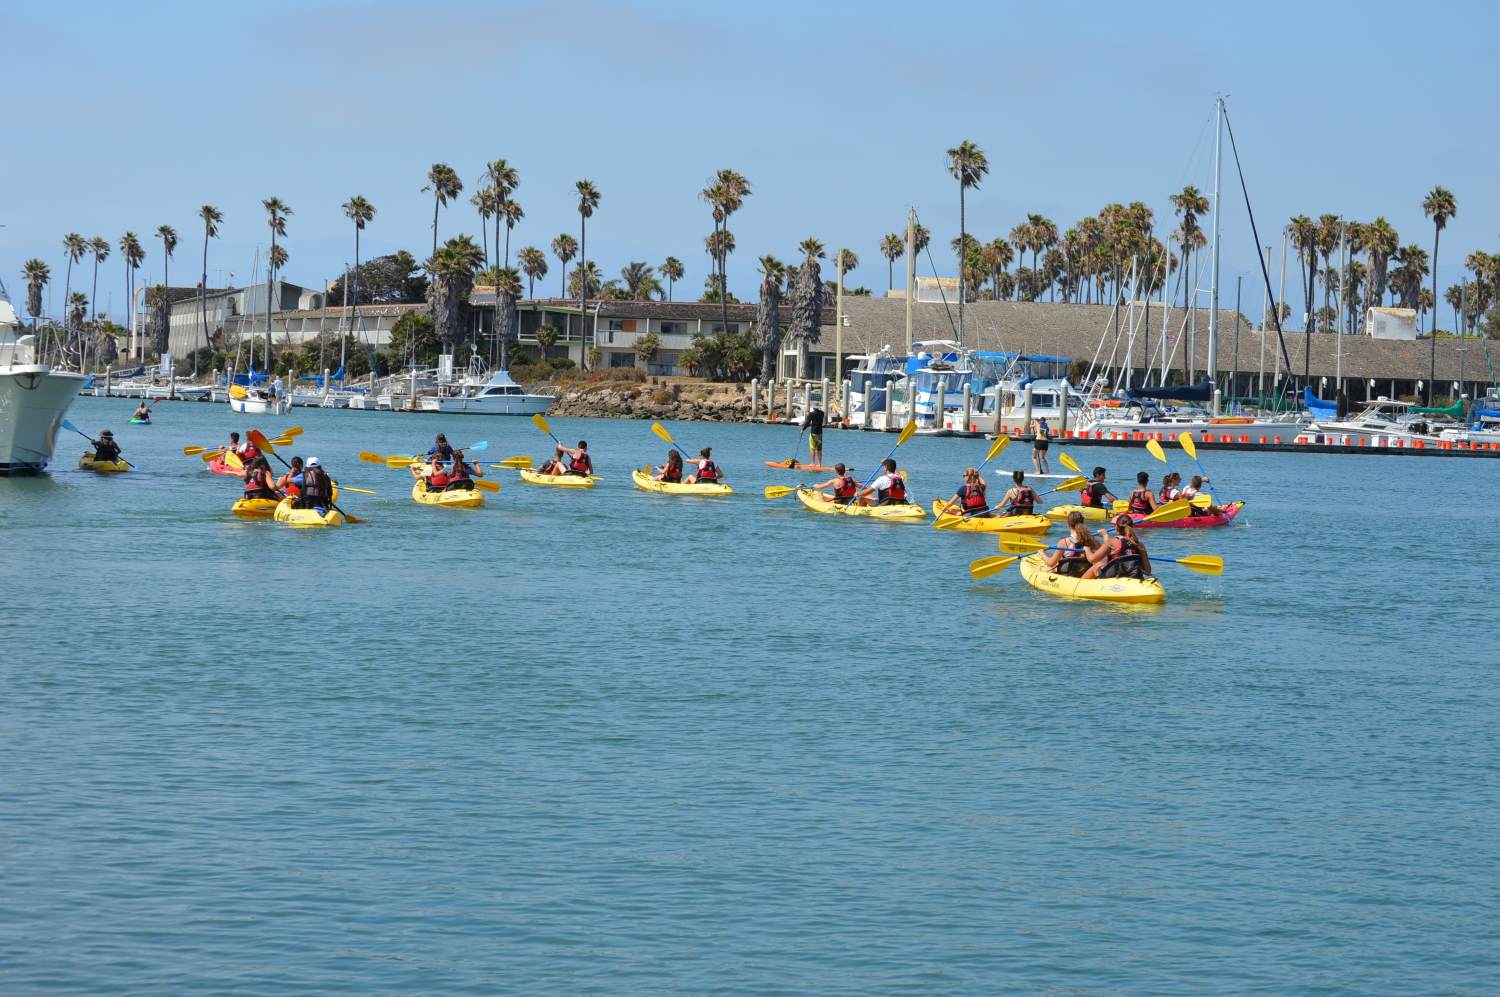 Group kayaking